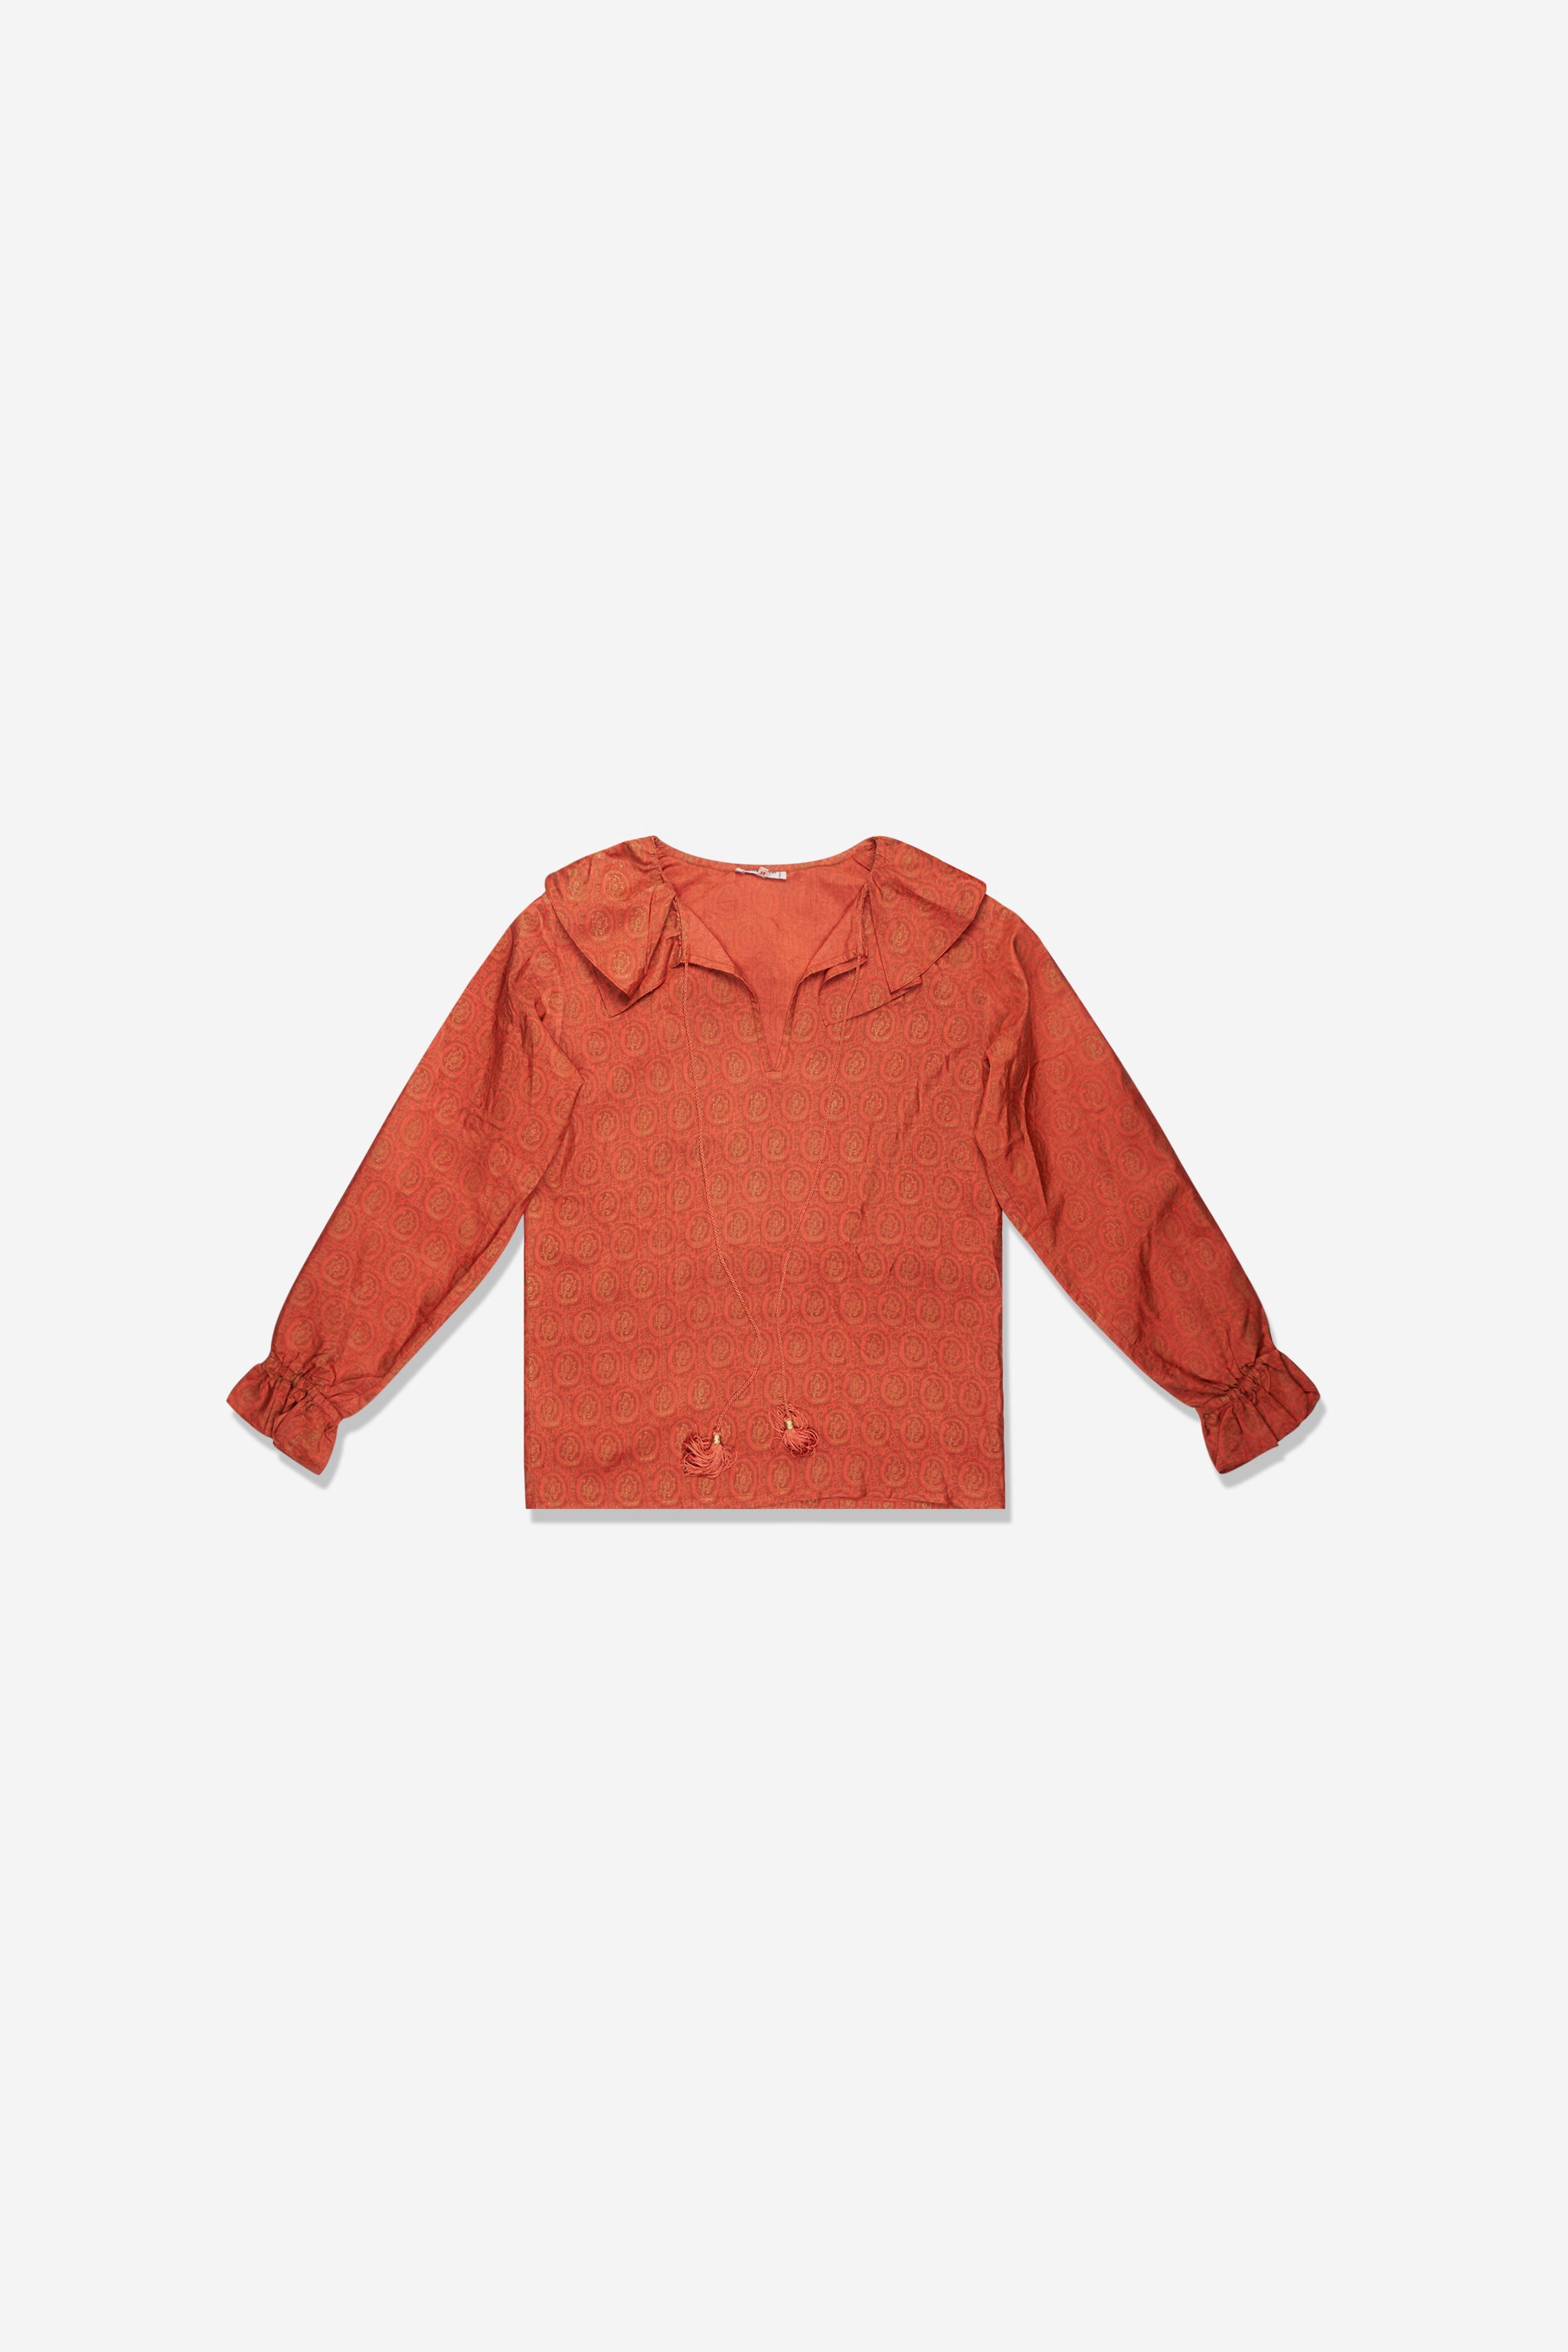 Yves Saint Laurent orange shirt